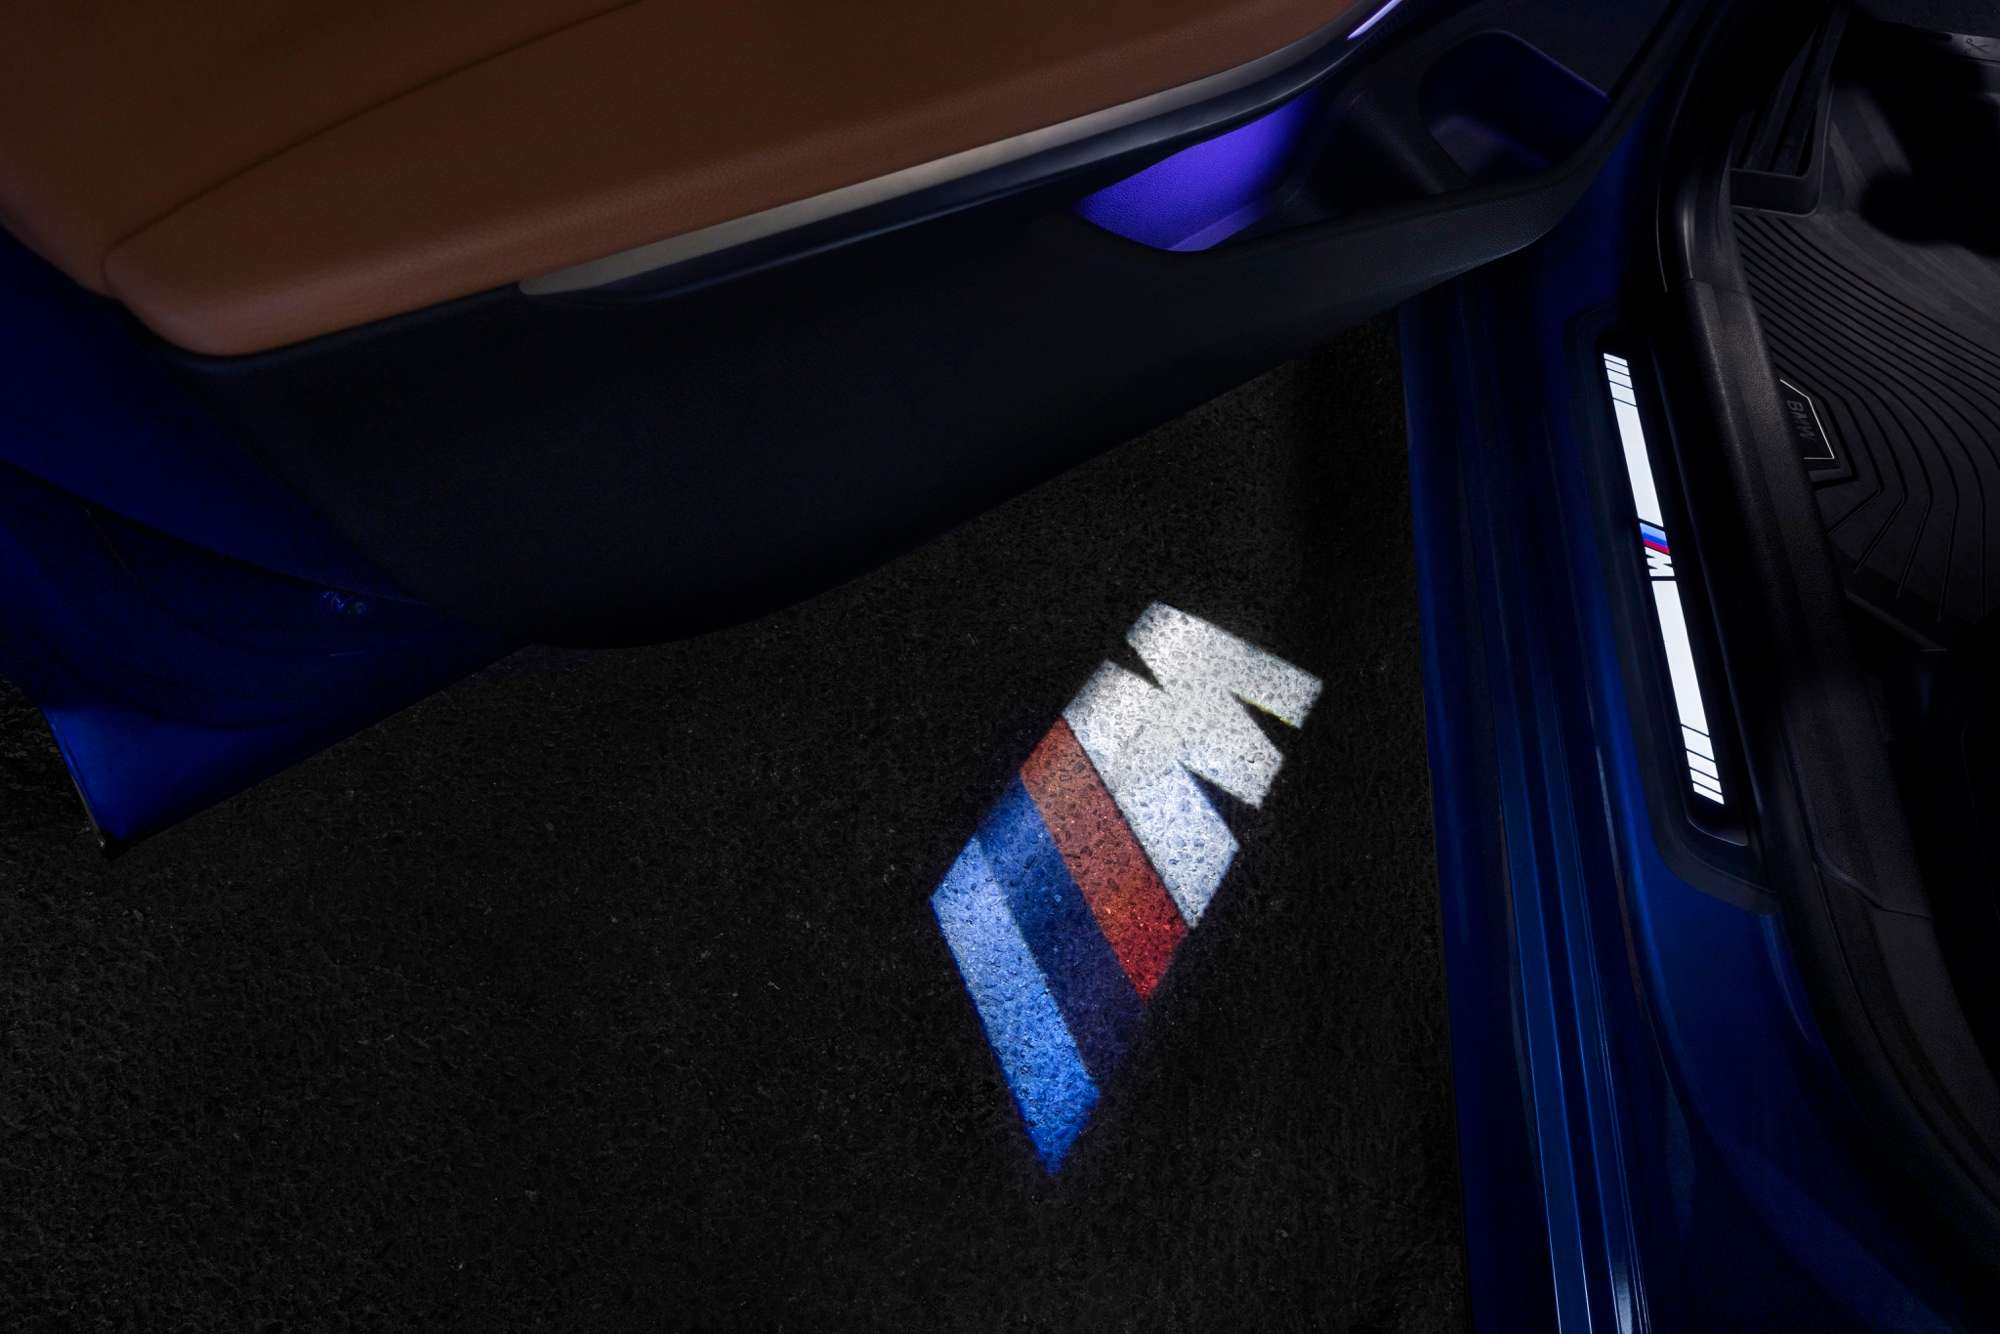 豪华超值  越级体验 全新BMW 3系晶彩定制版悠然来袭